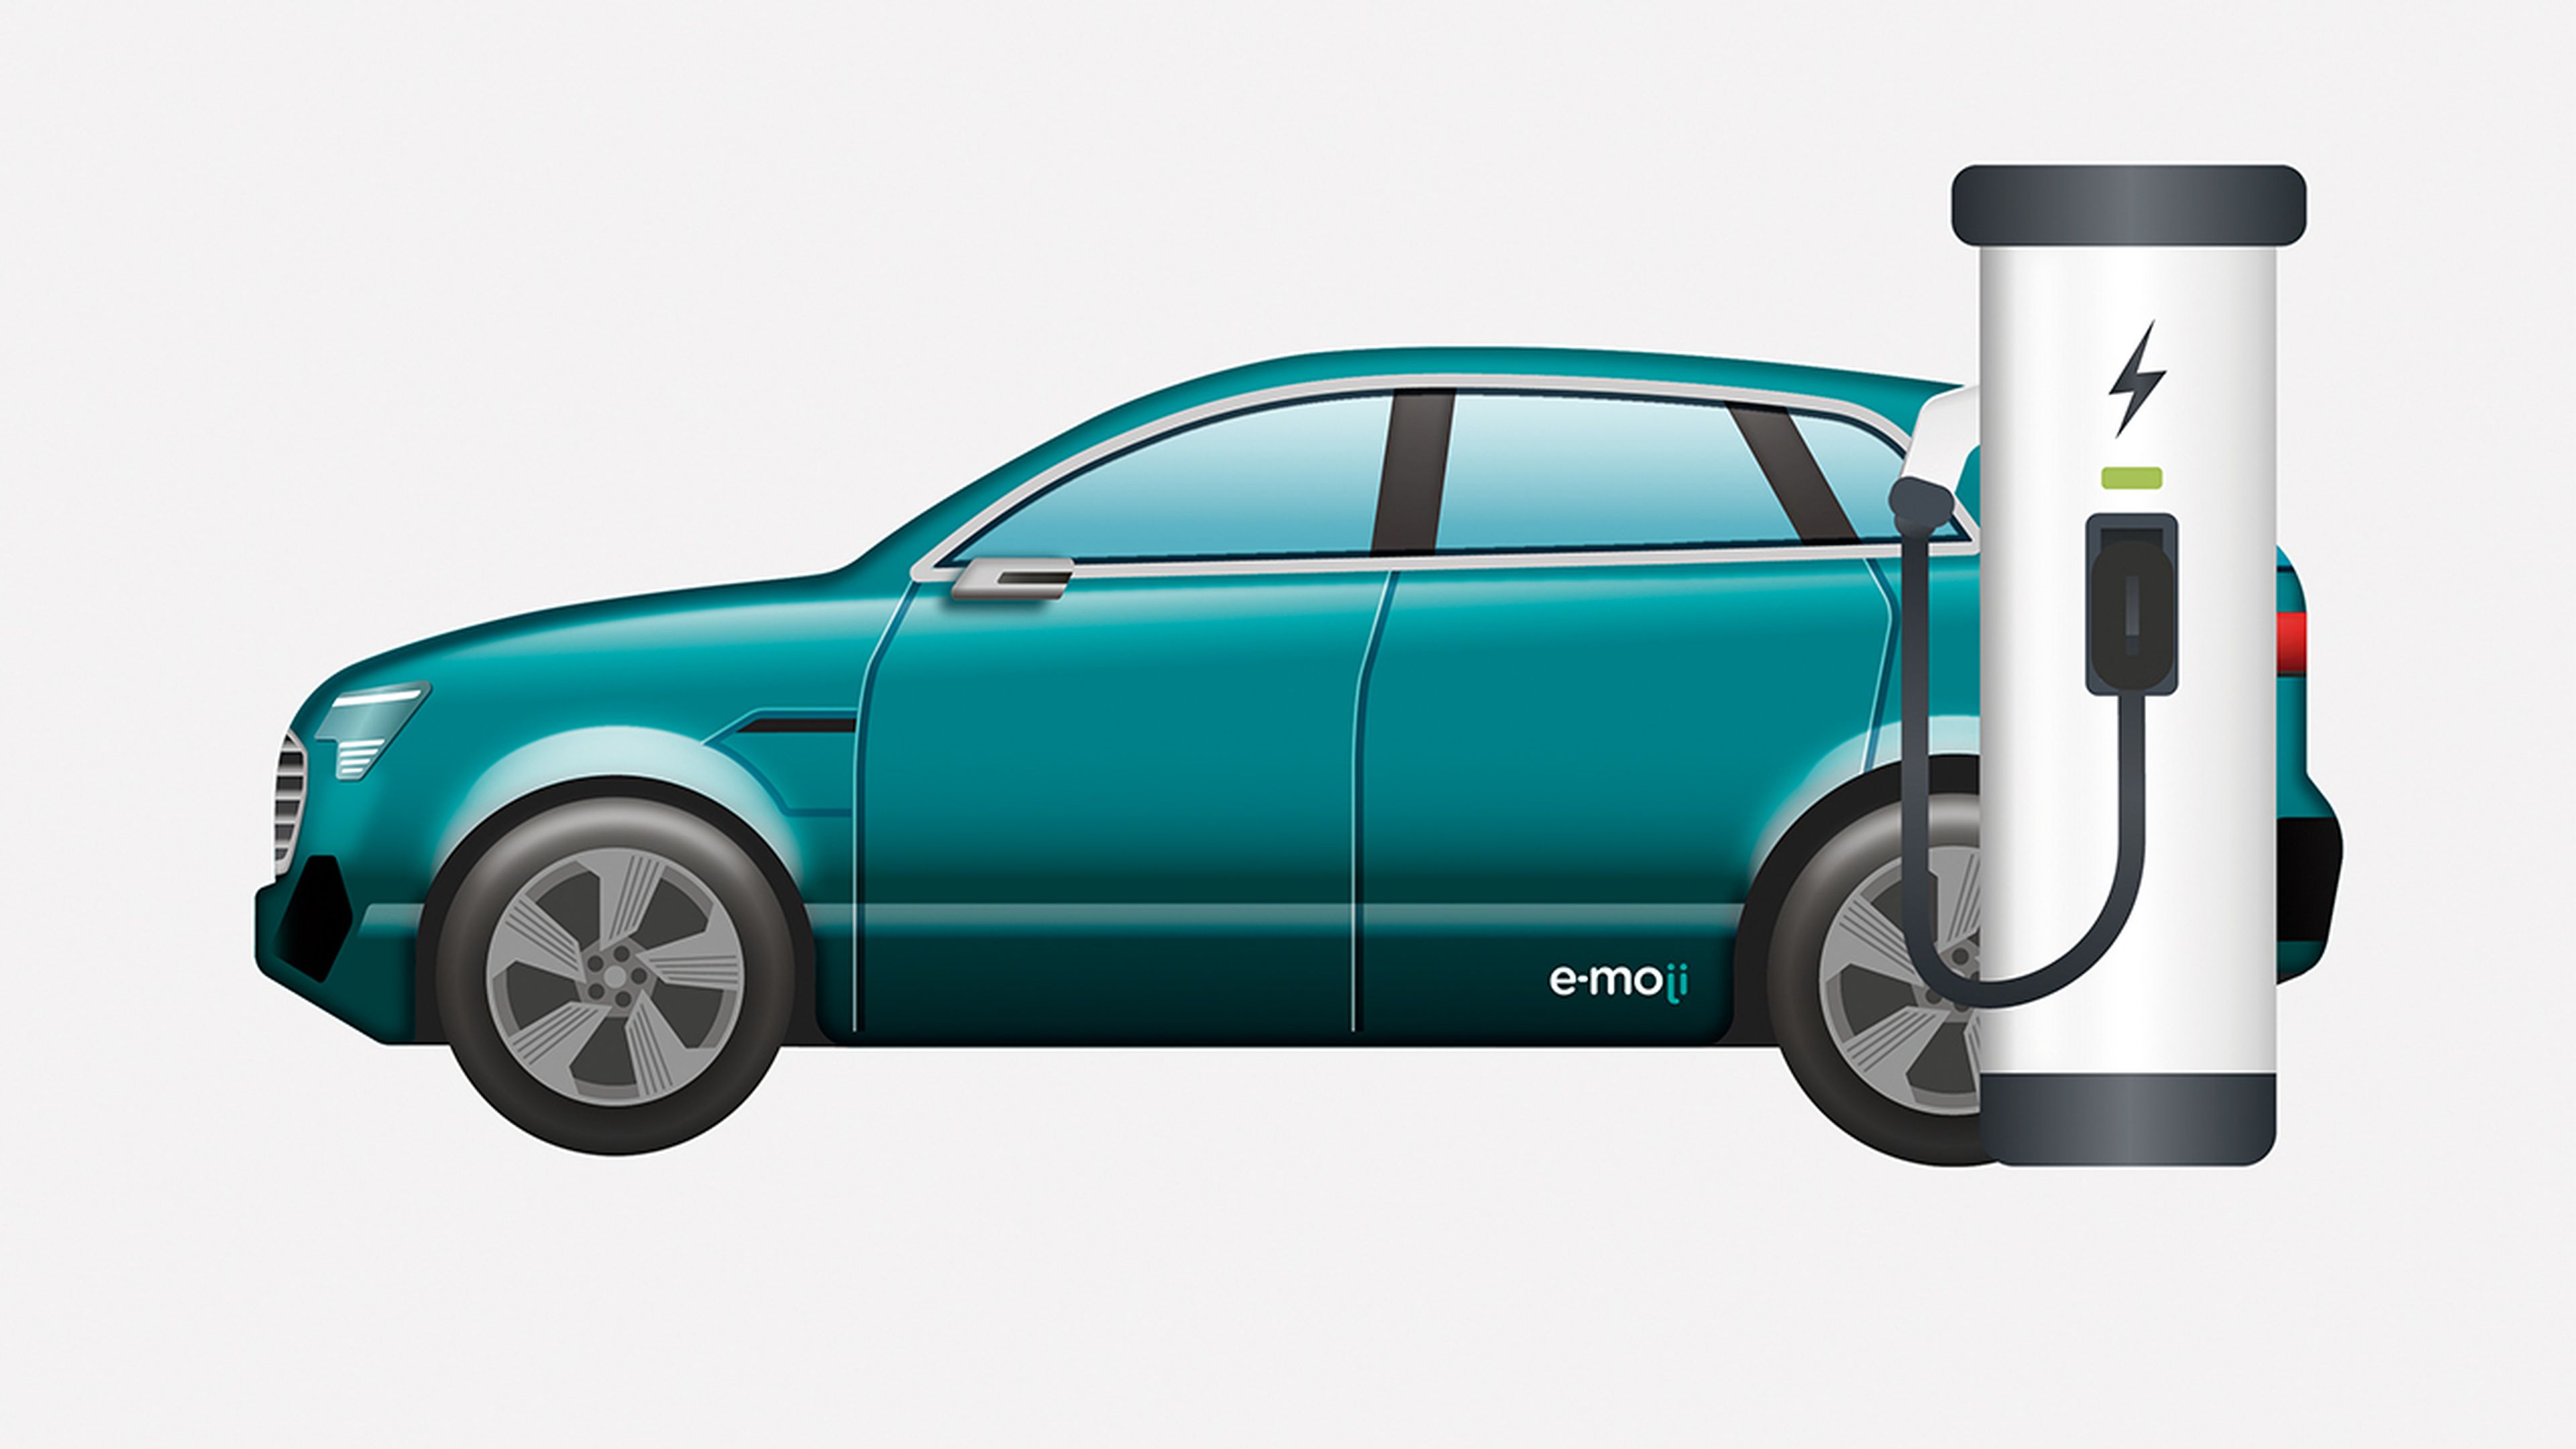 Audi emoji coche eléctrico lateral